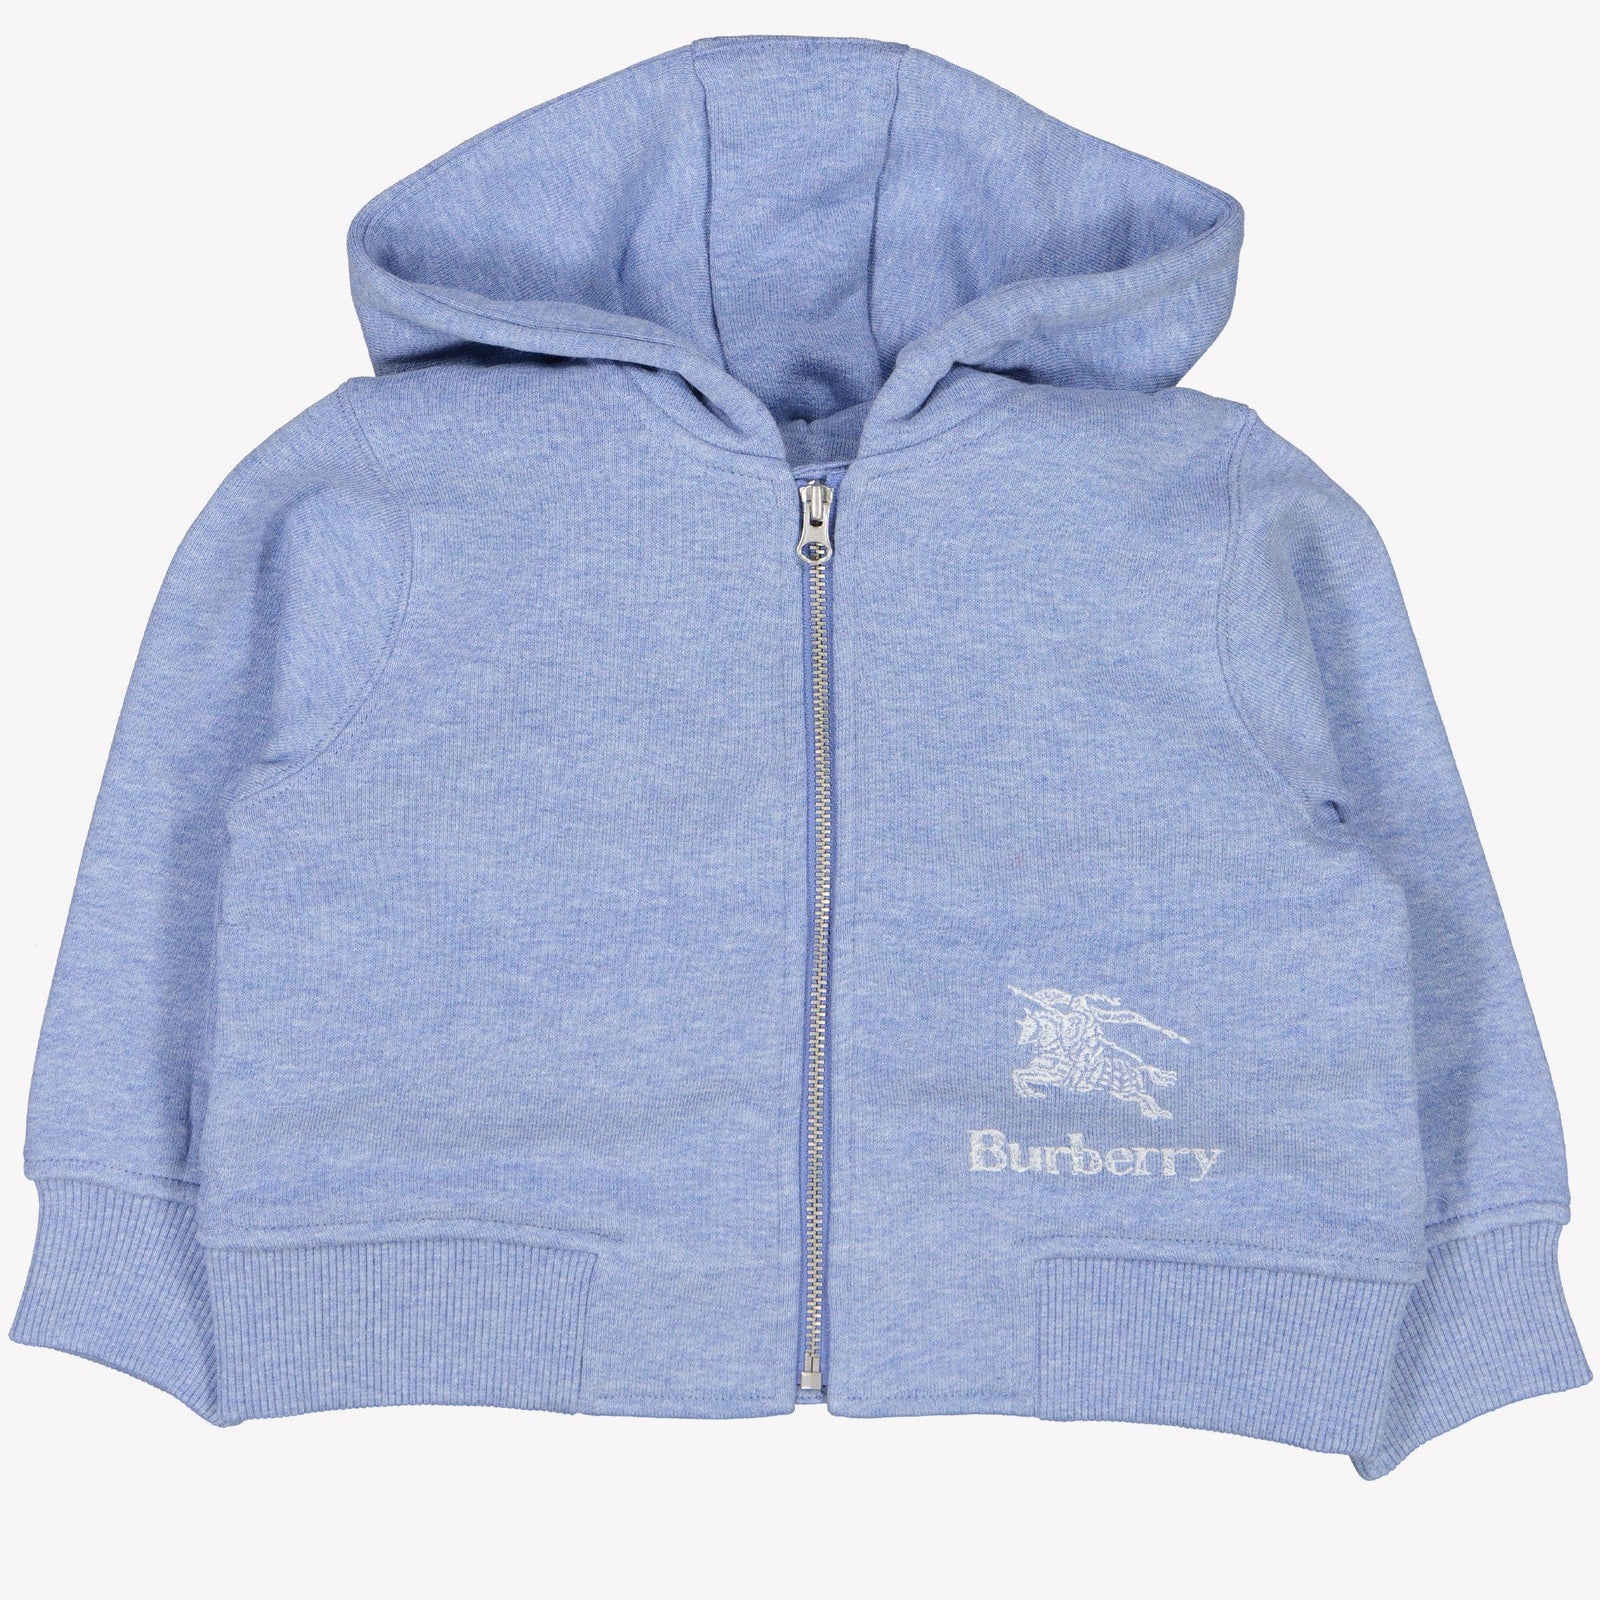 Burberry Baby Jongens Shorts Licht Blauw 6 mnd